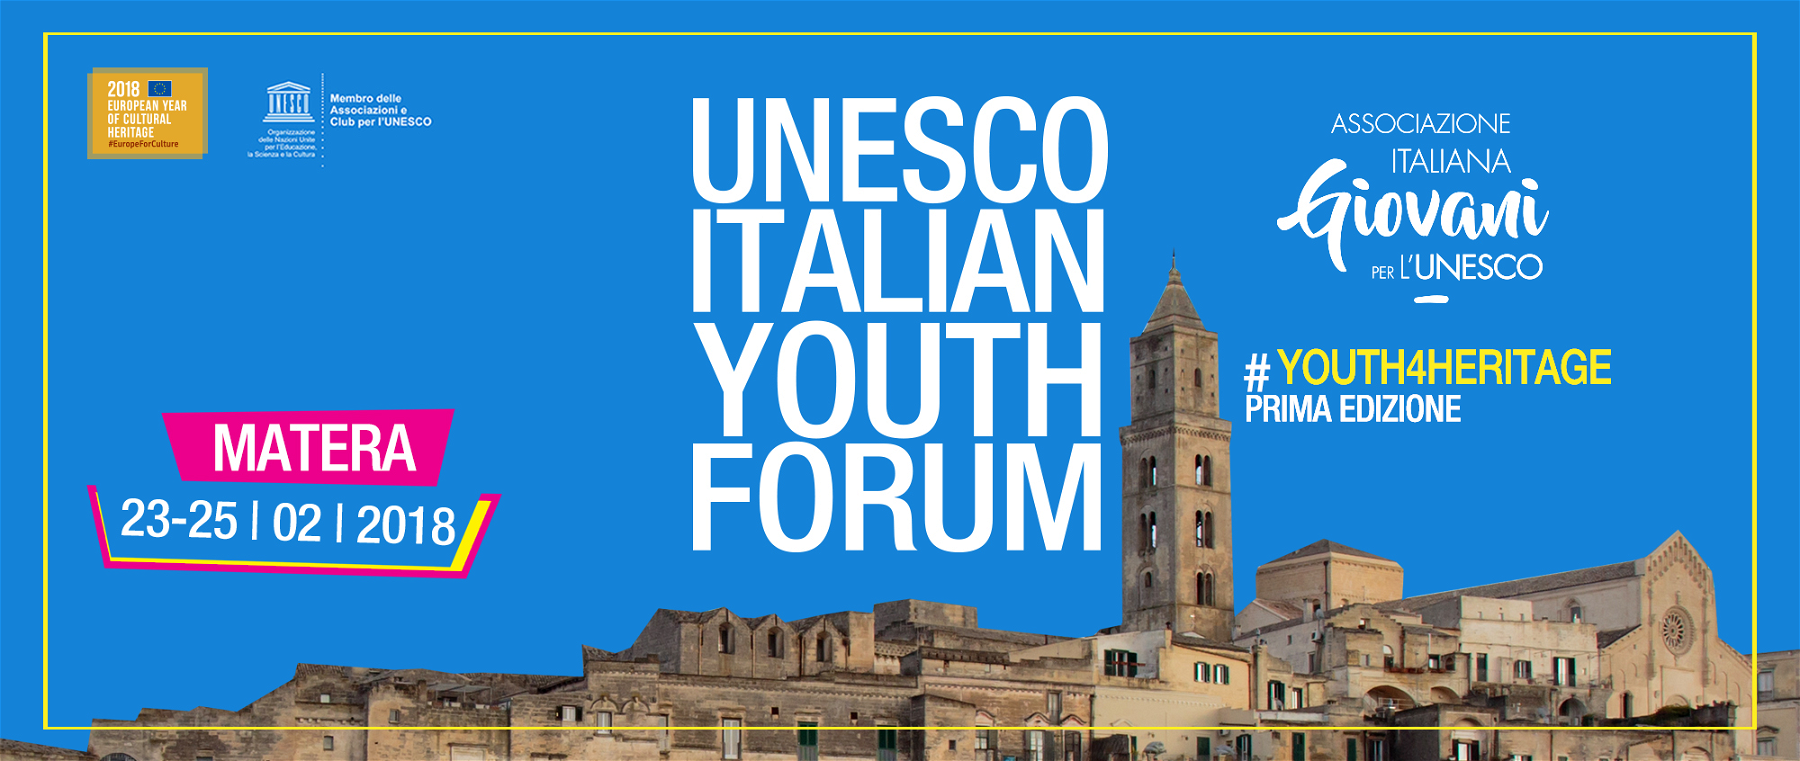 Le premier forum UNESCO pour les jeunes se tiendra à Matera du 23 au 25 février. Voici comment participer